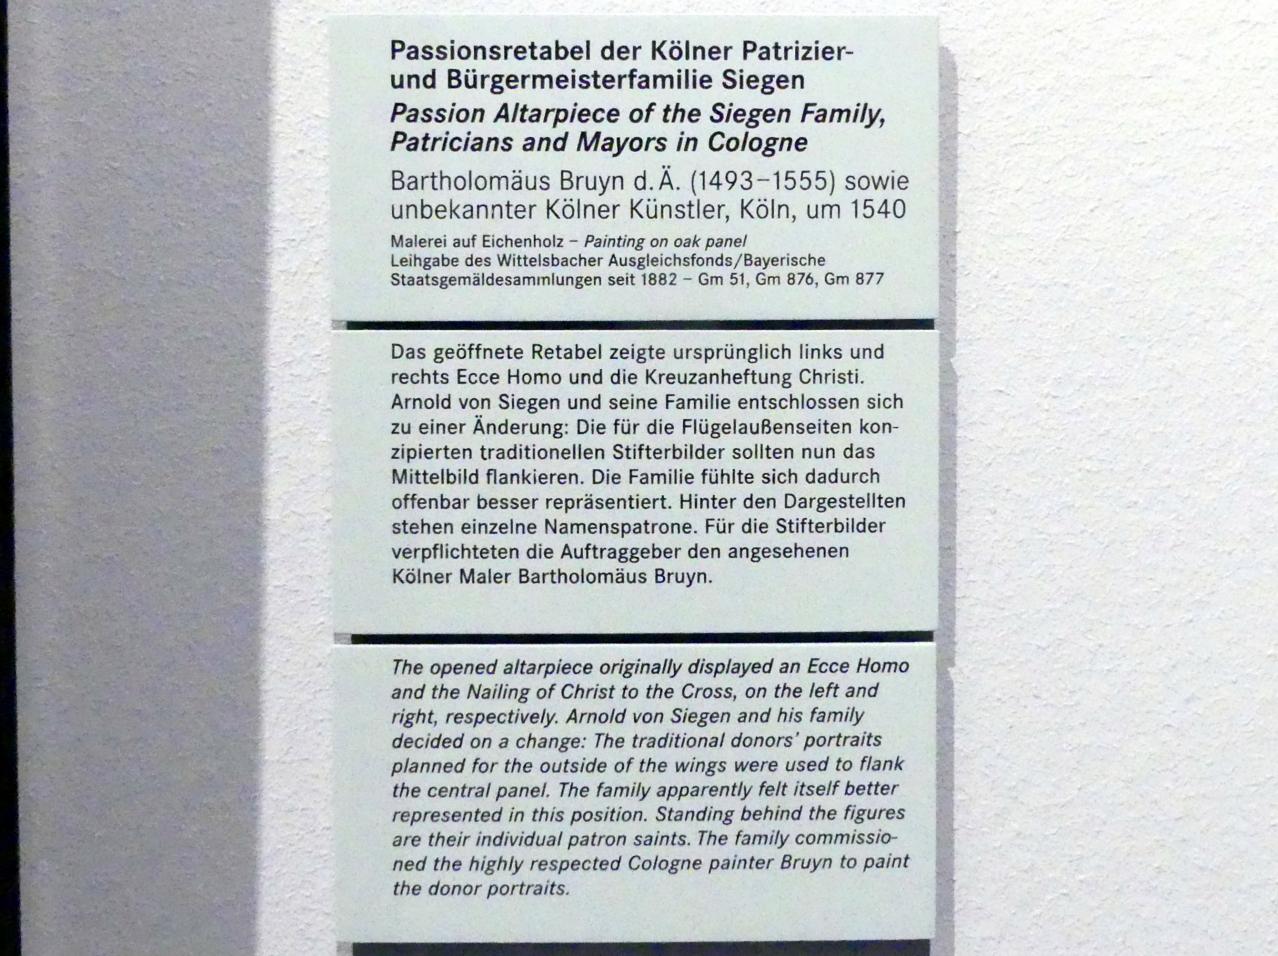 Bartholomäus Bruyn der Ältere (1513–1546), Passionsretabel der Kölner Patrizier- und Bürgermeisterfamilie Siegen, Nürnberg, Germanisches Nationalmuseum, Saal 106, um 1540, Bild 5/5